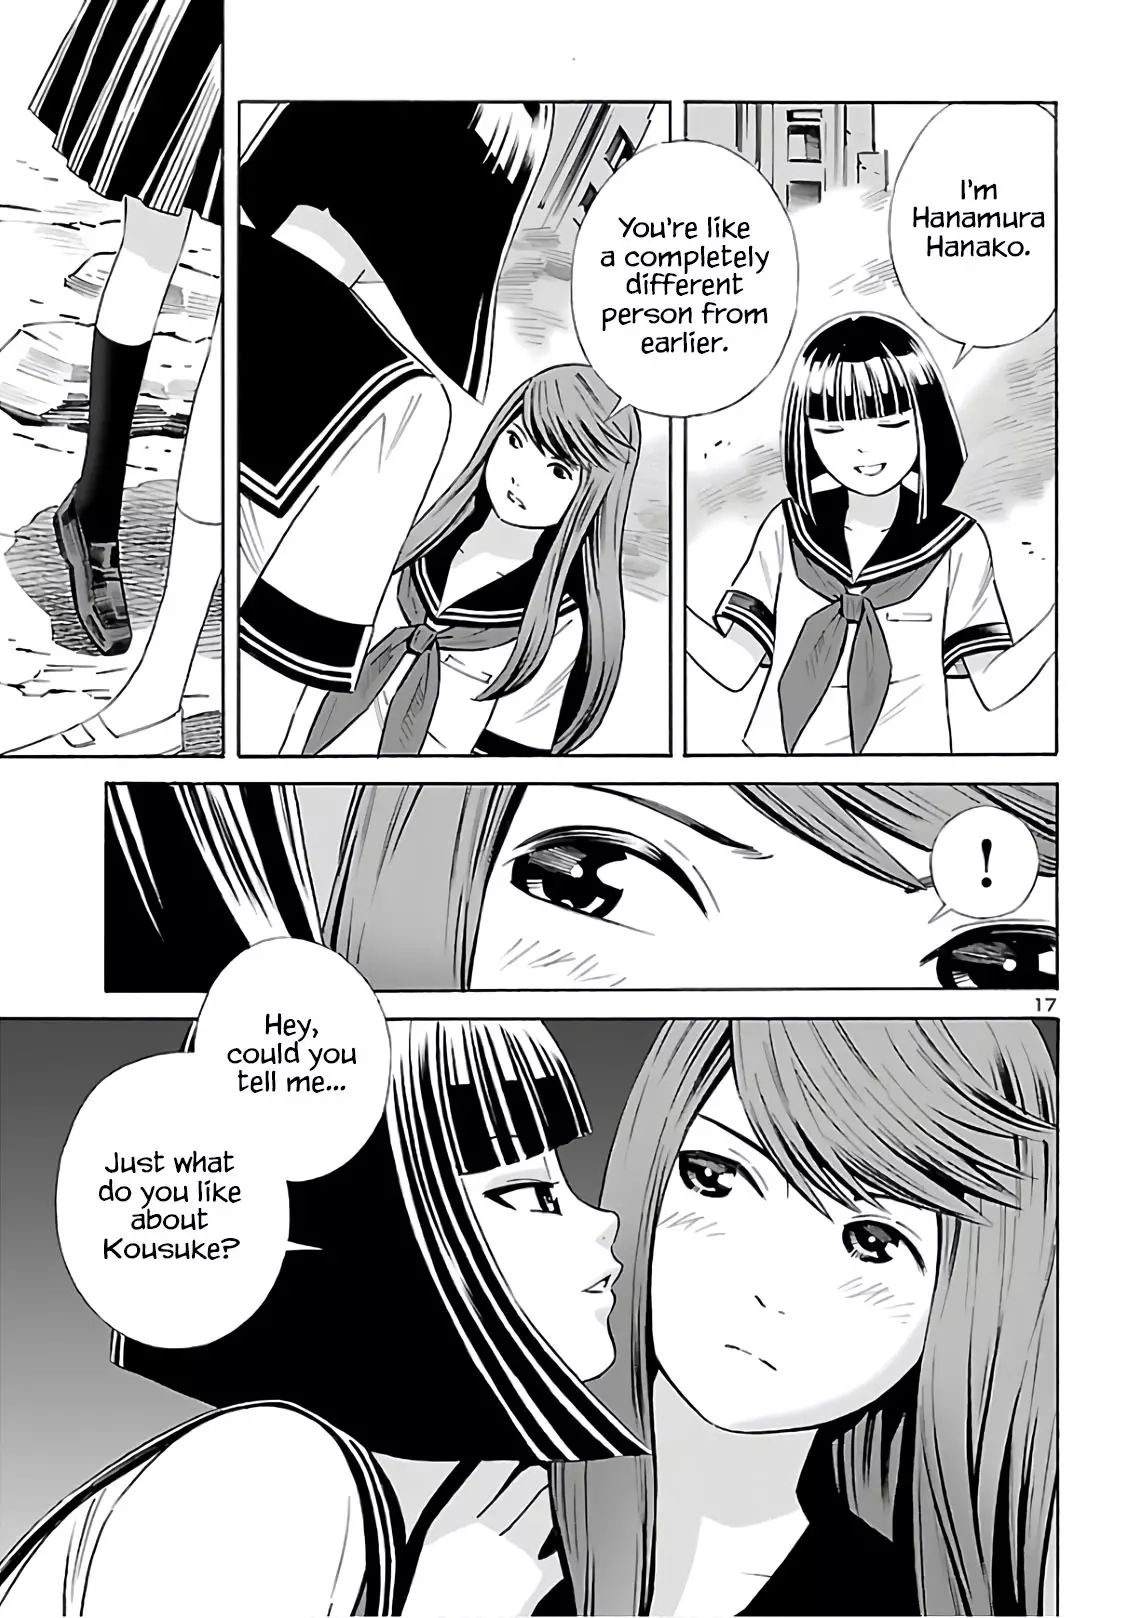 24-Ku No Hanako-San - 9 page 17